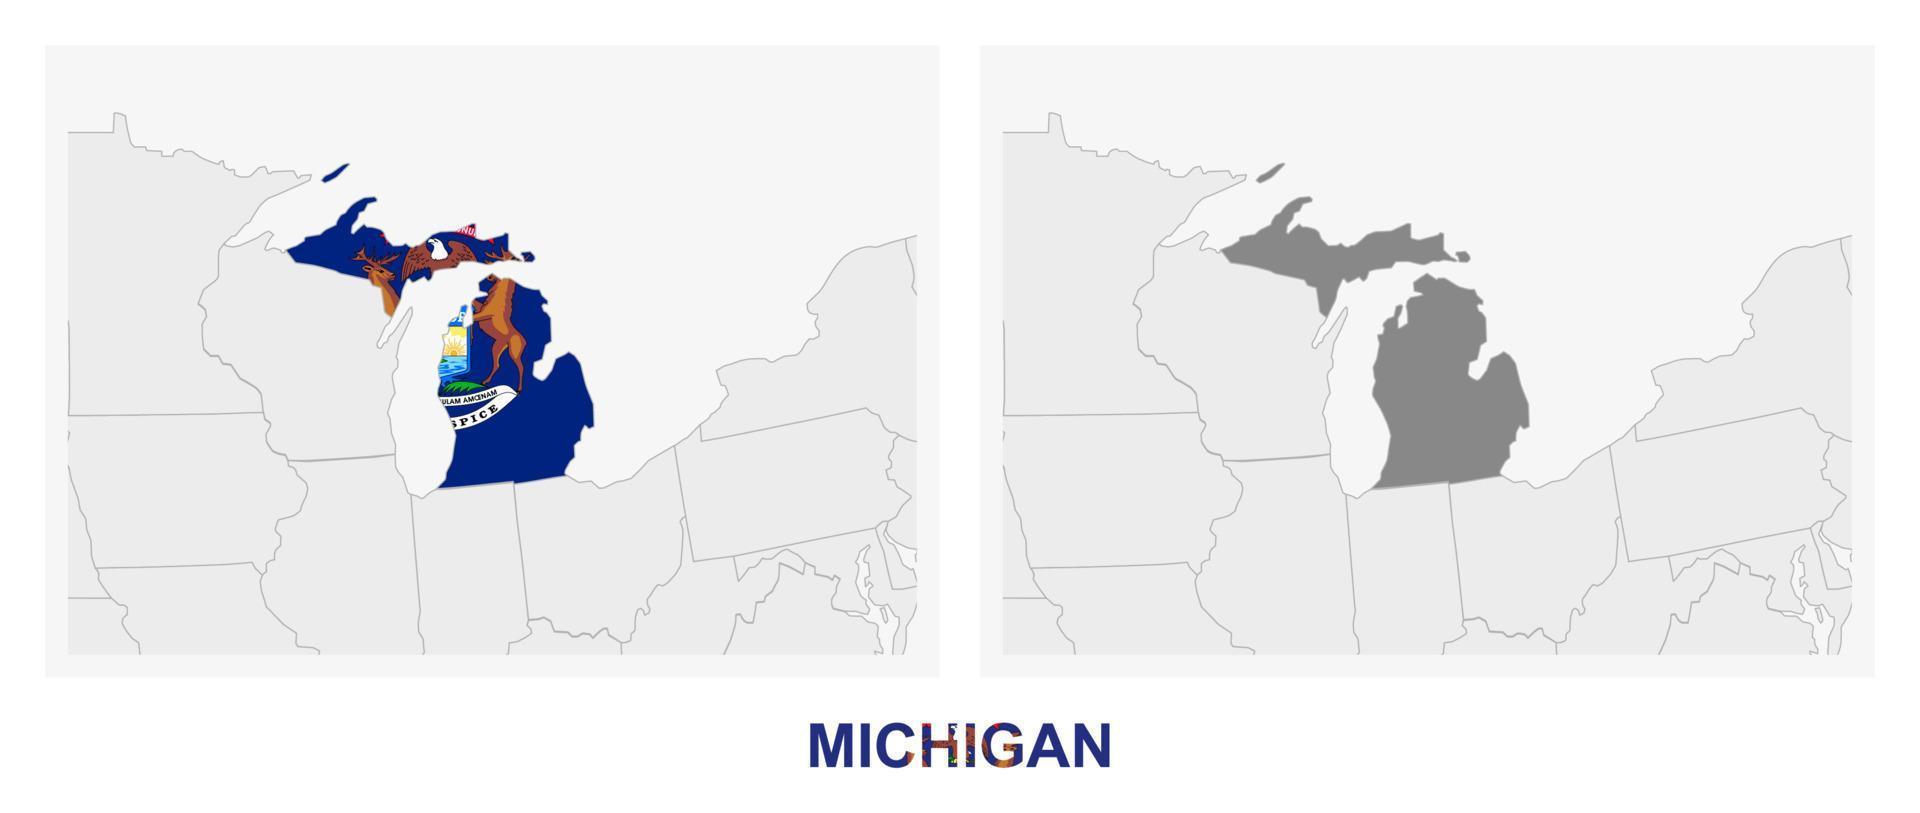 dos versiones del mapa del estado de michigan, con la bandera de michigan y resaltada en gris oscuro. vector